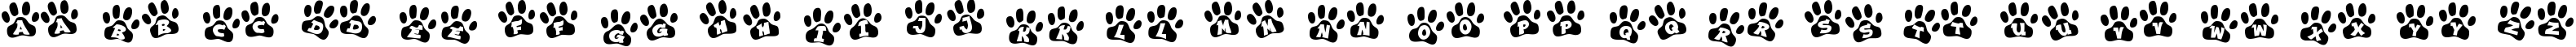 Пример написания английского алфавита шрифтом Ennobled Pet